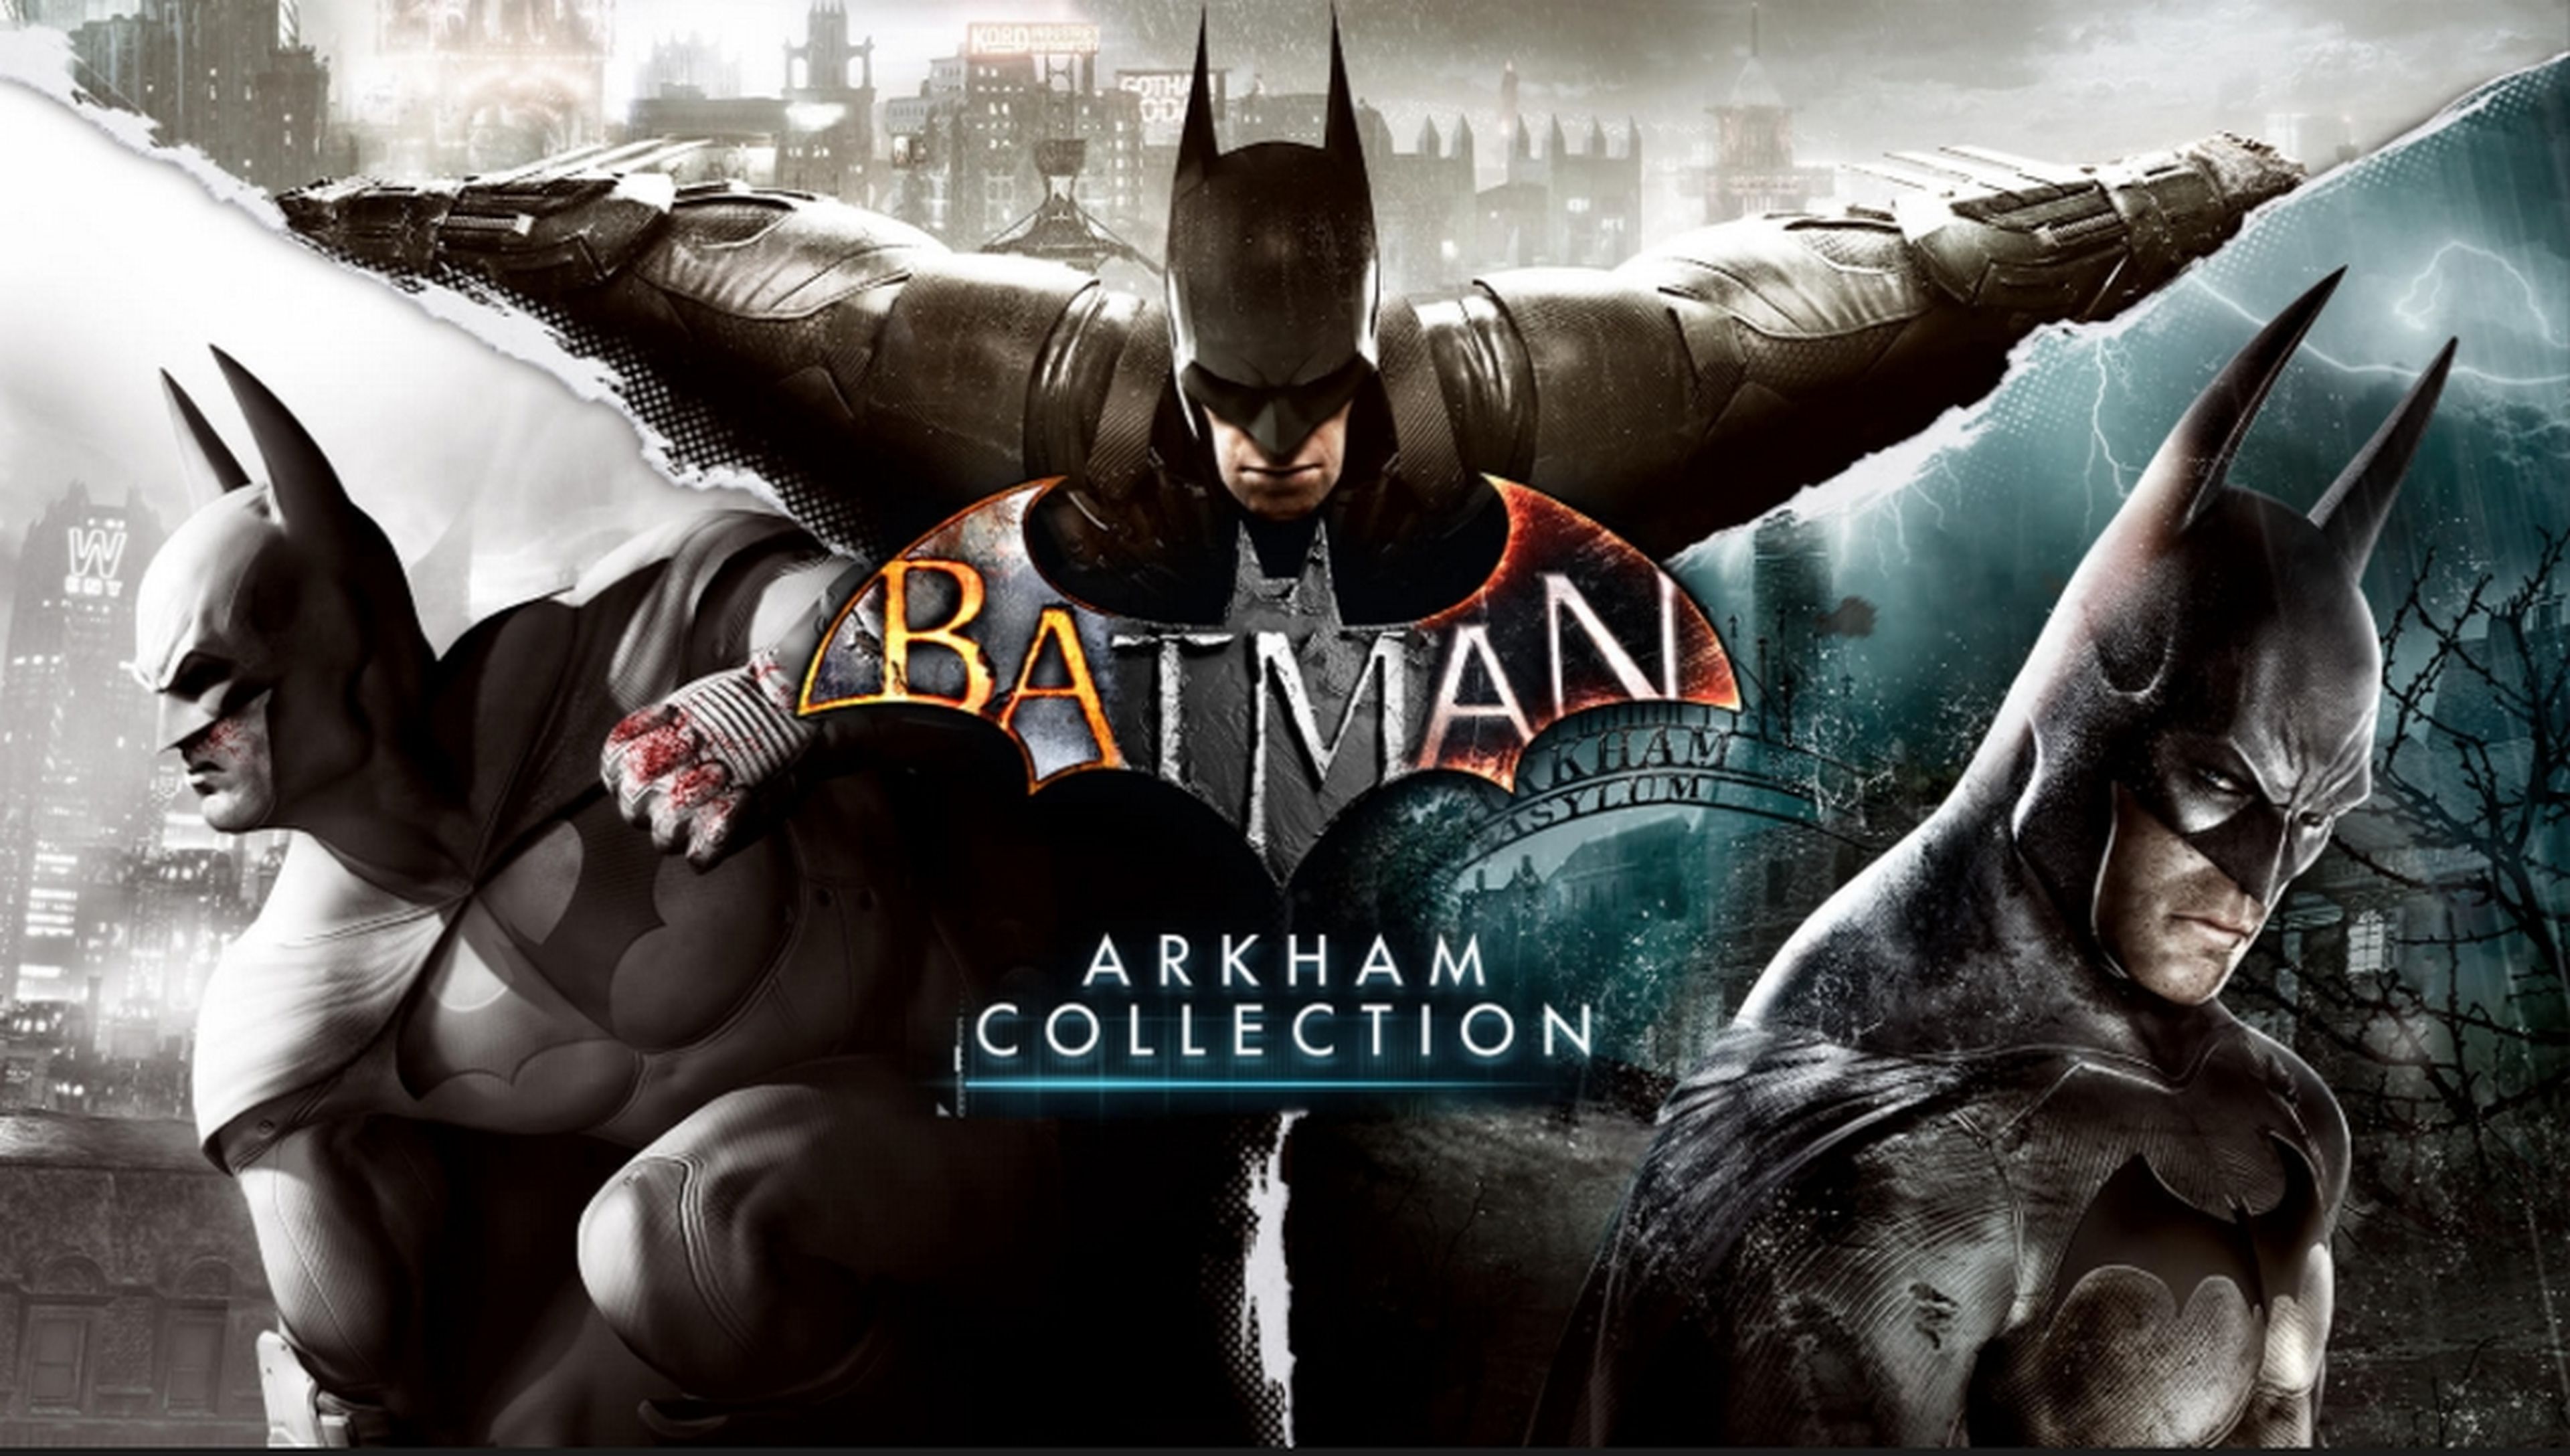 Descarga gratis 6 juegos de Batman y quédatelos para siempre